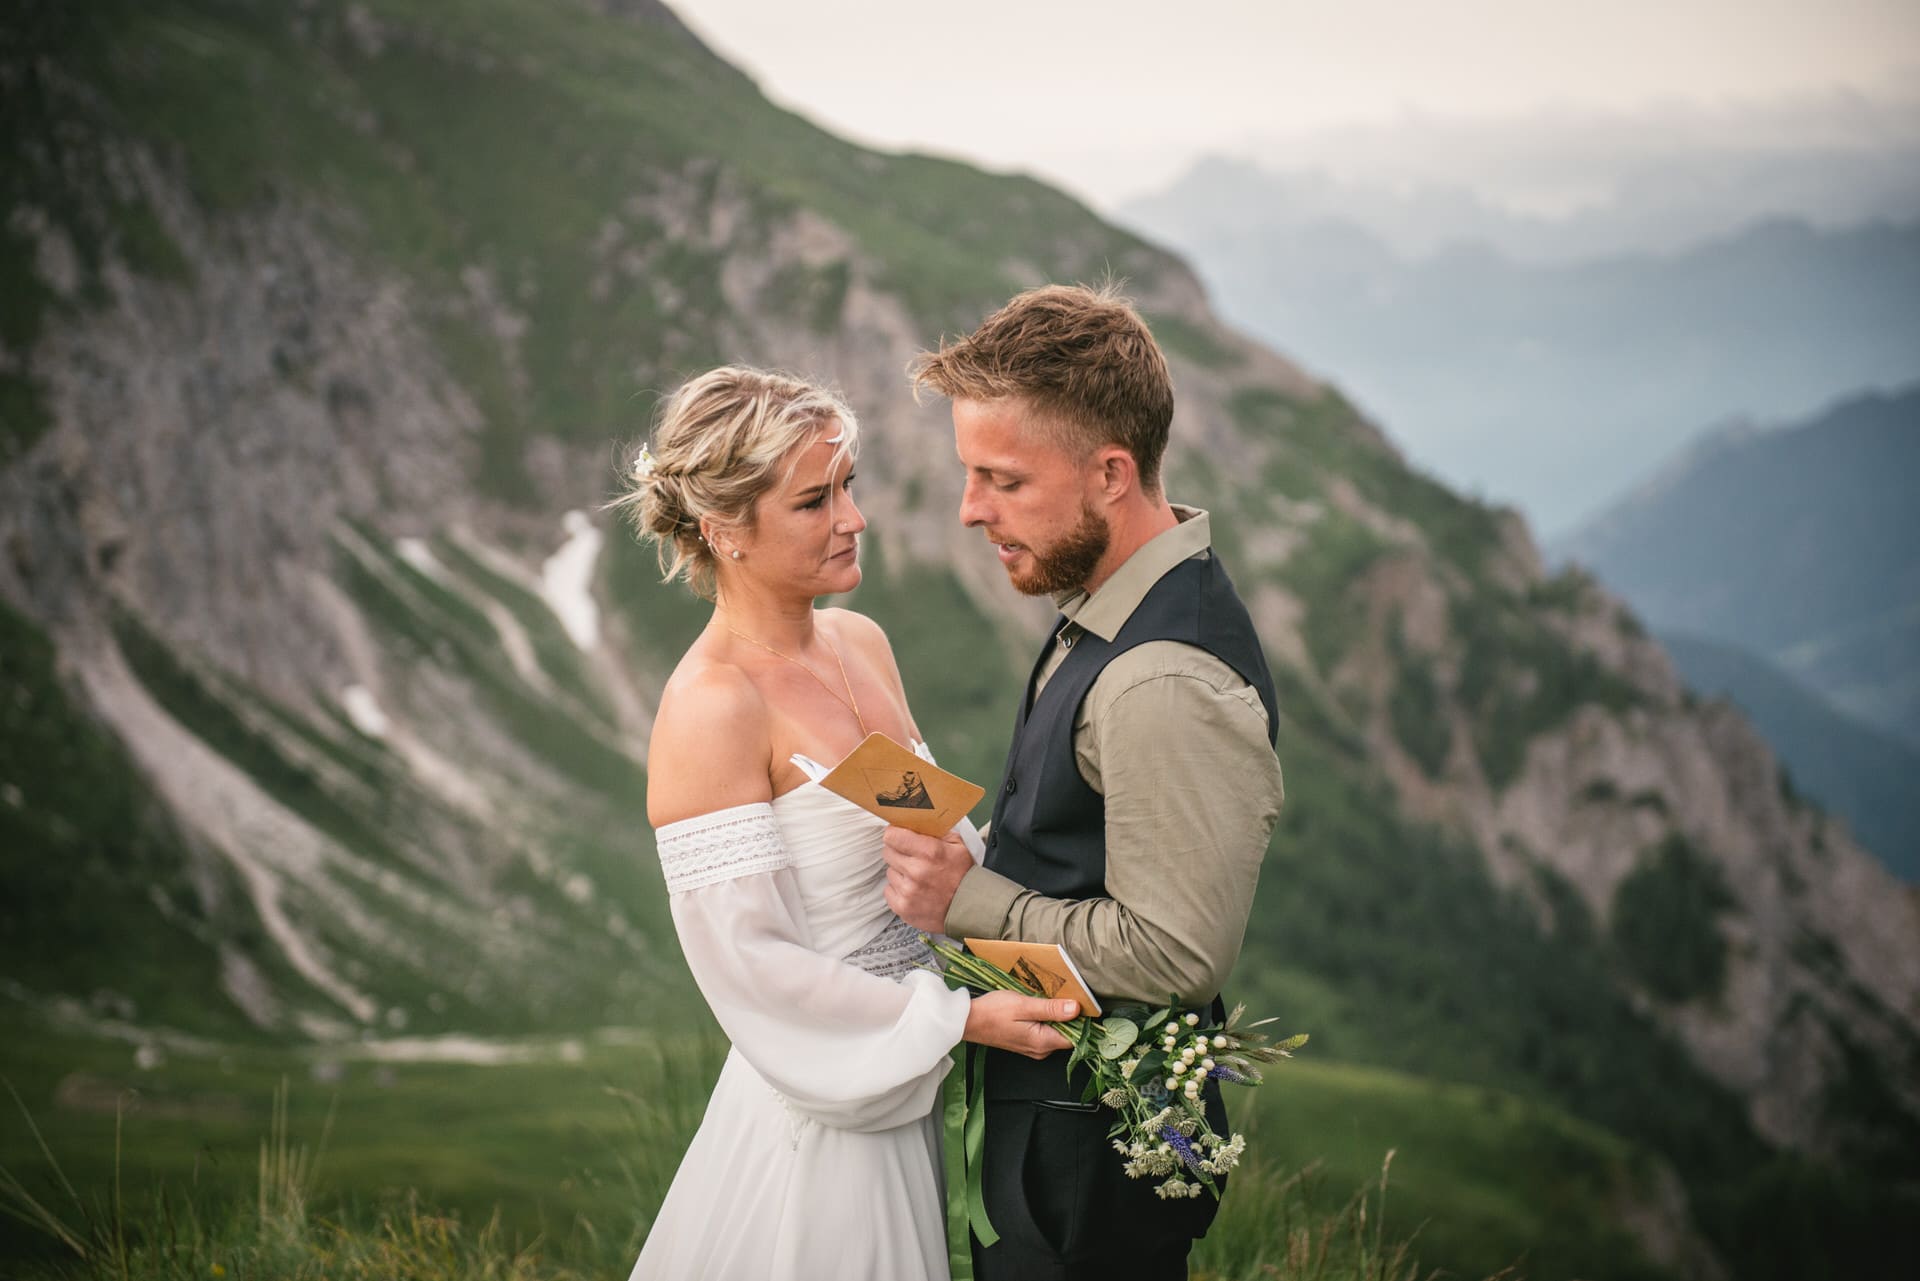 Dolomites elopement ceremony in Italy